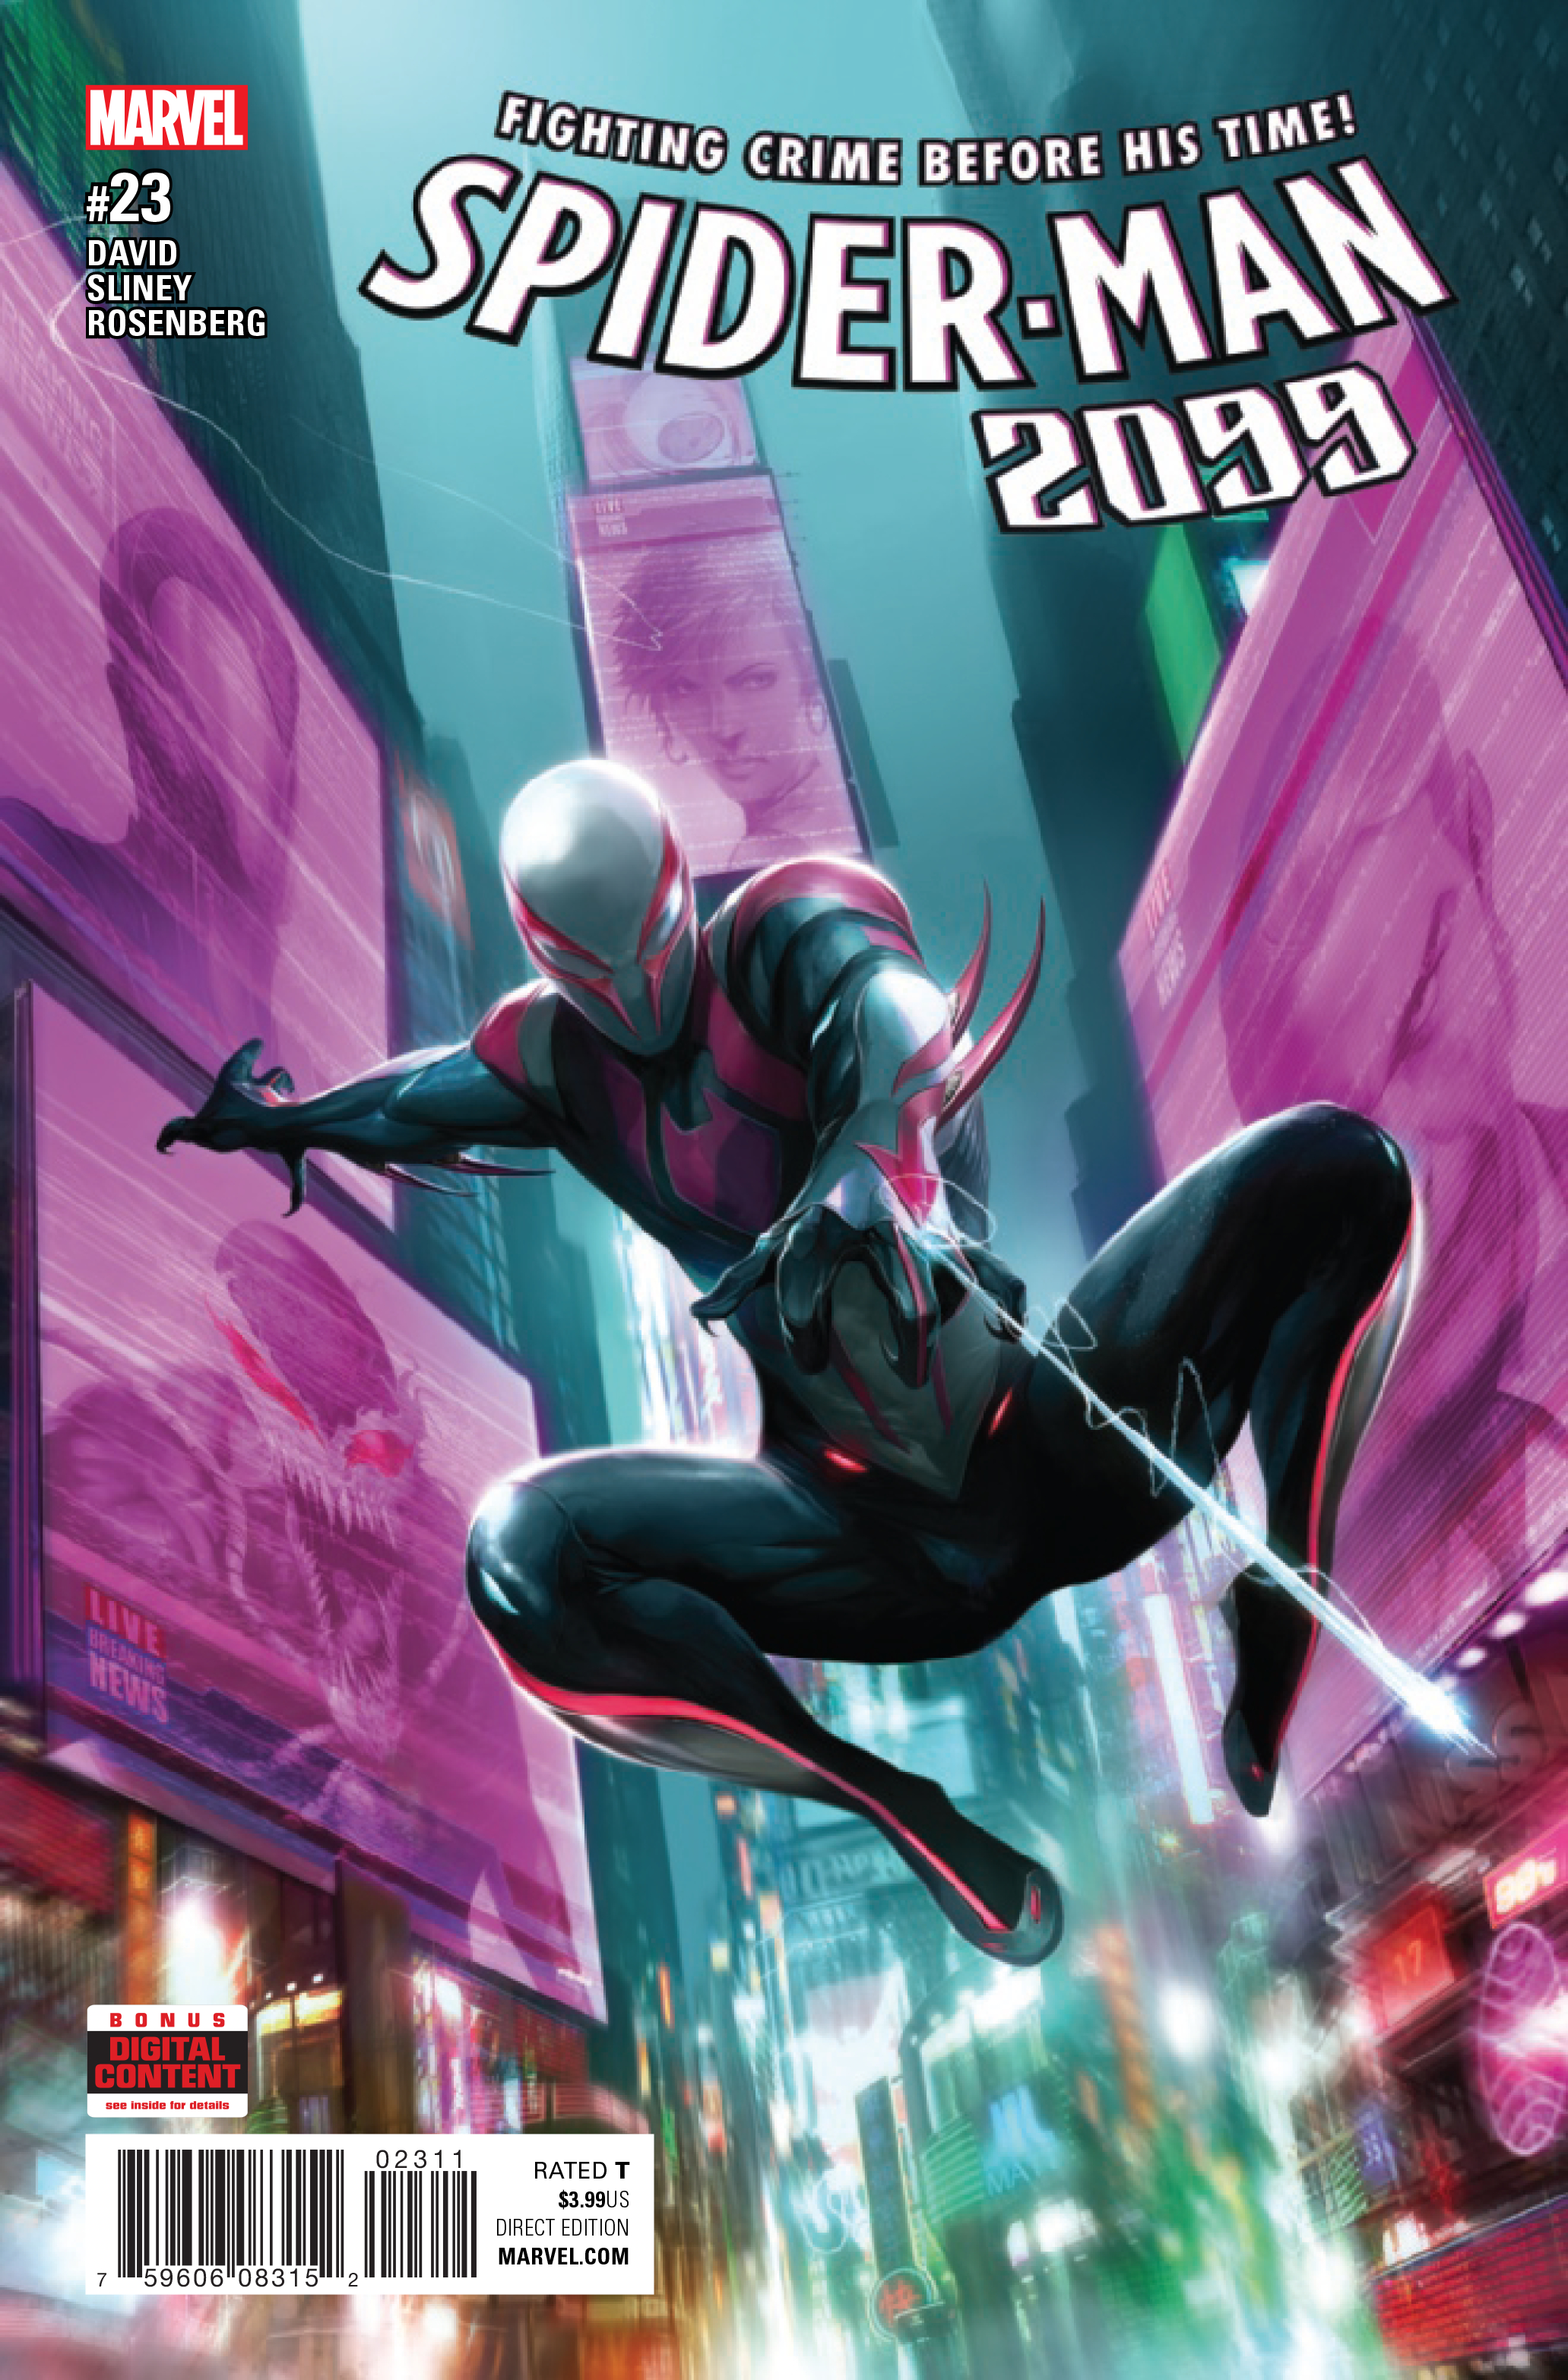 SPIDER-MAN 2099 #23